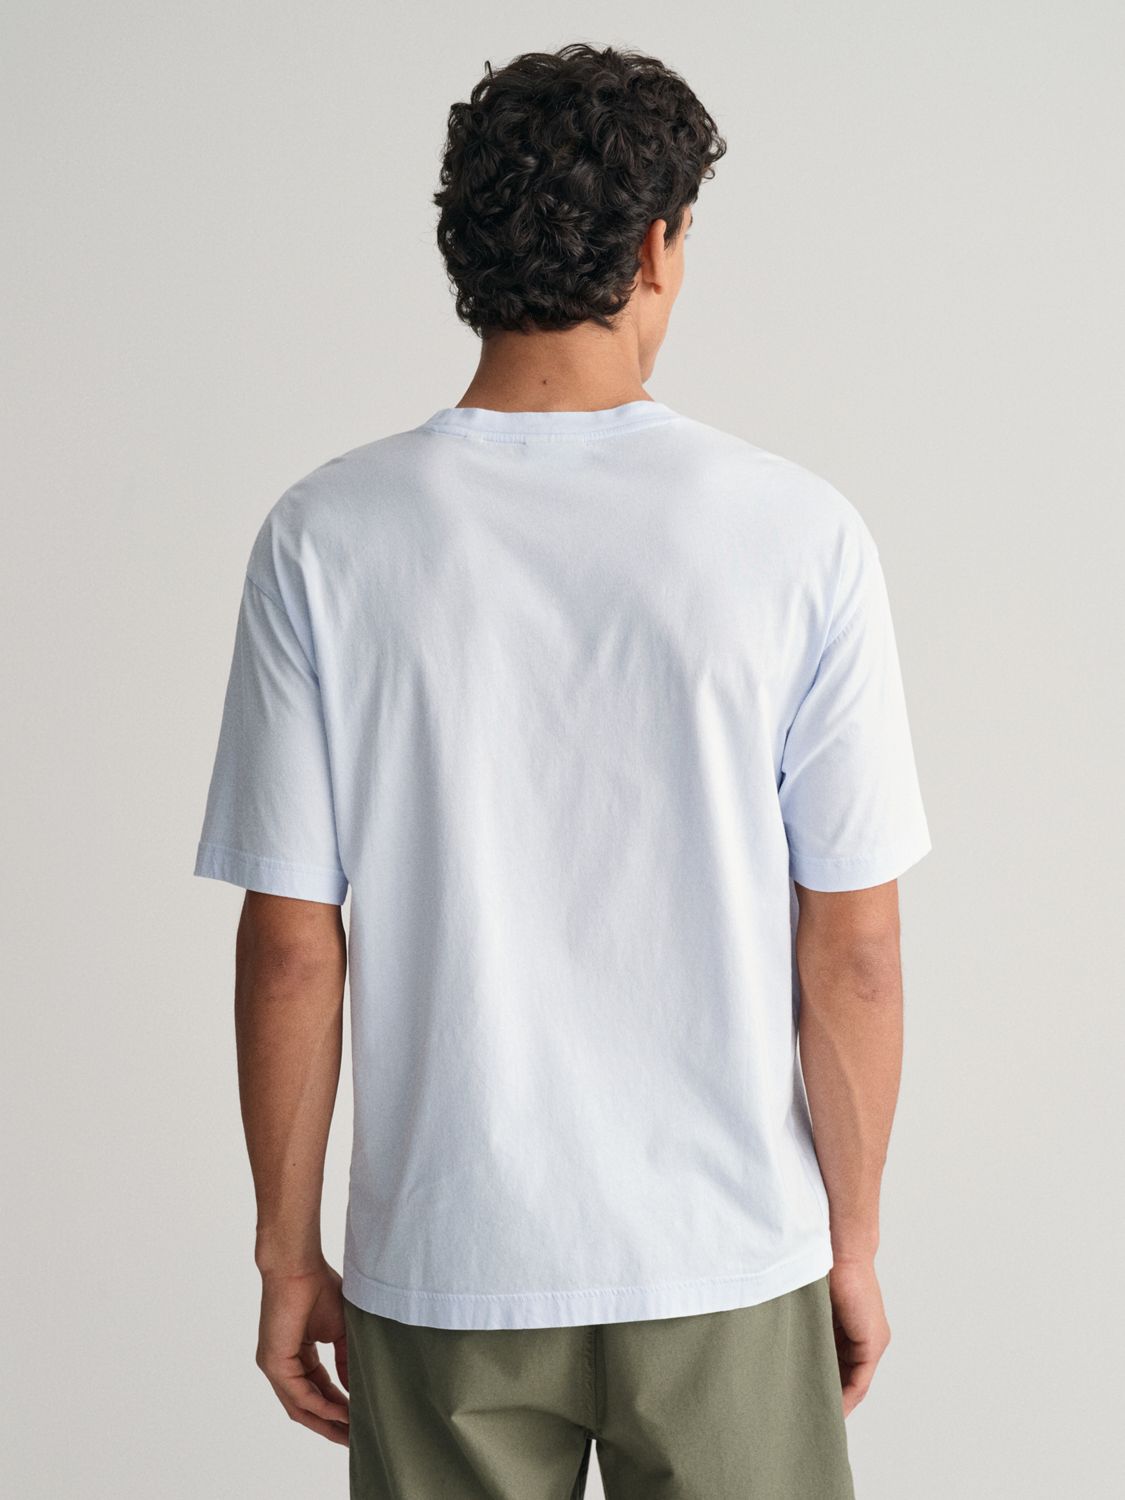 GANT Washed Graphic Short Sleeve T-Shirt, Light Blue/Multi, M